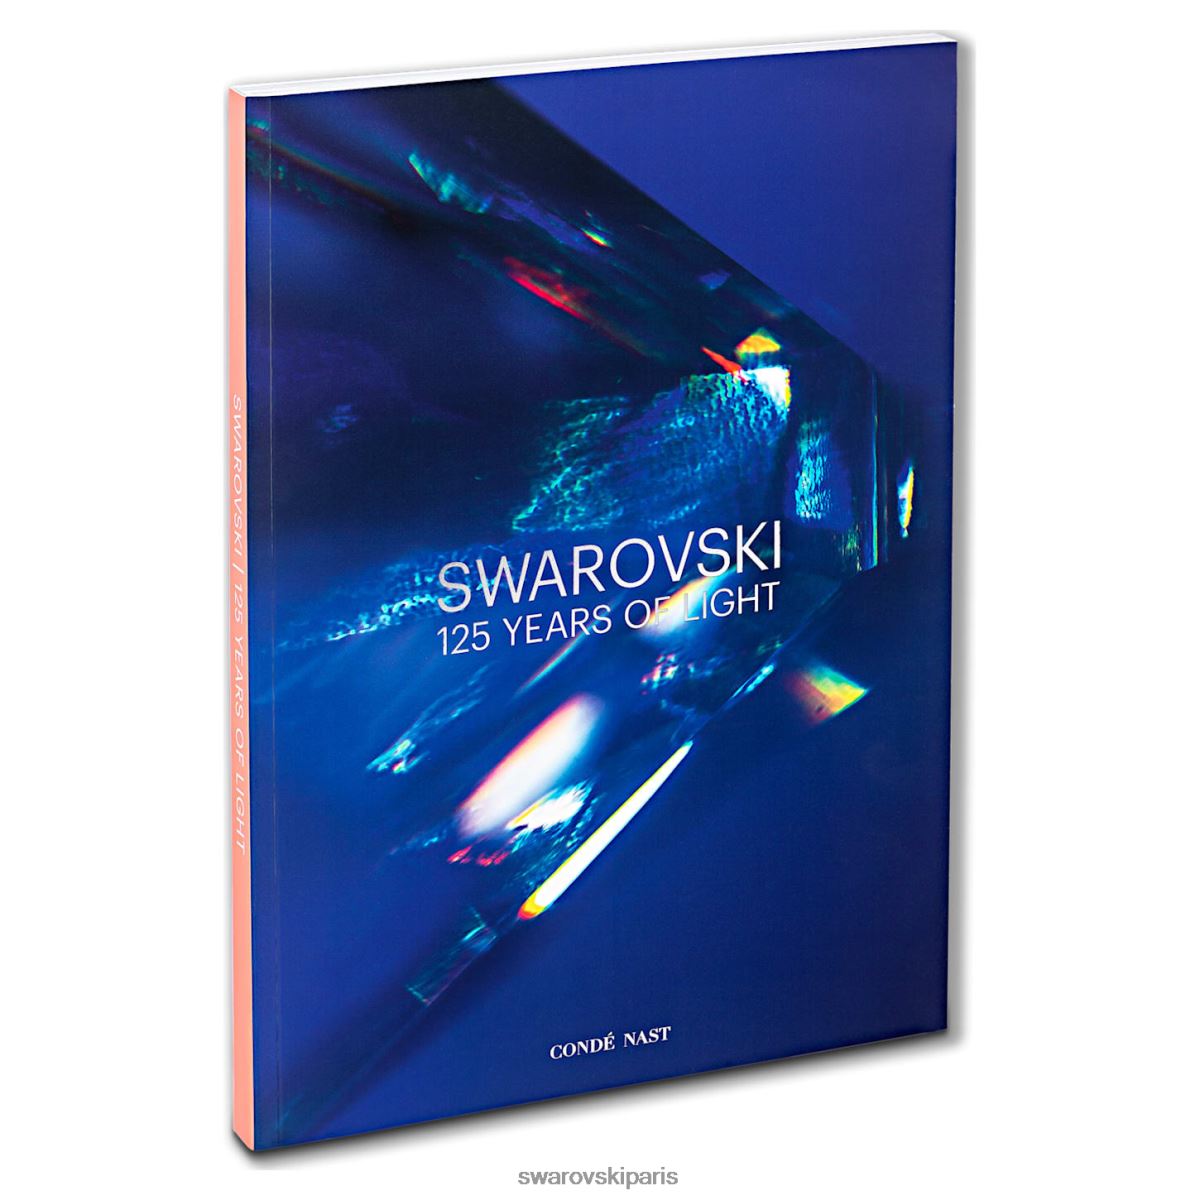 accessoires Swarovski Livre anniversaire 125 ans de lumière bleu RZD0XJ1796